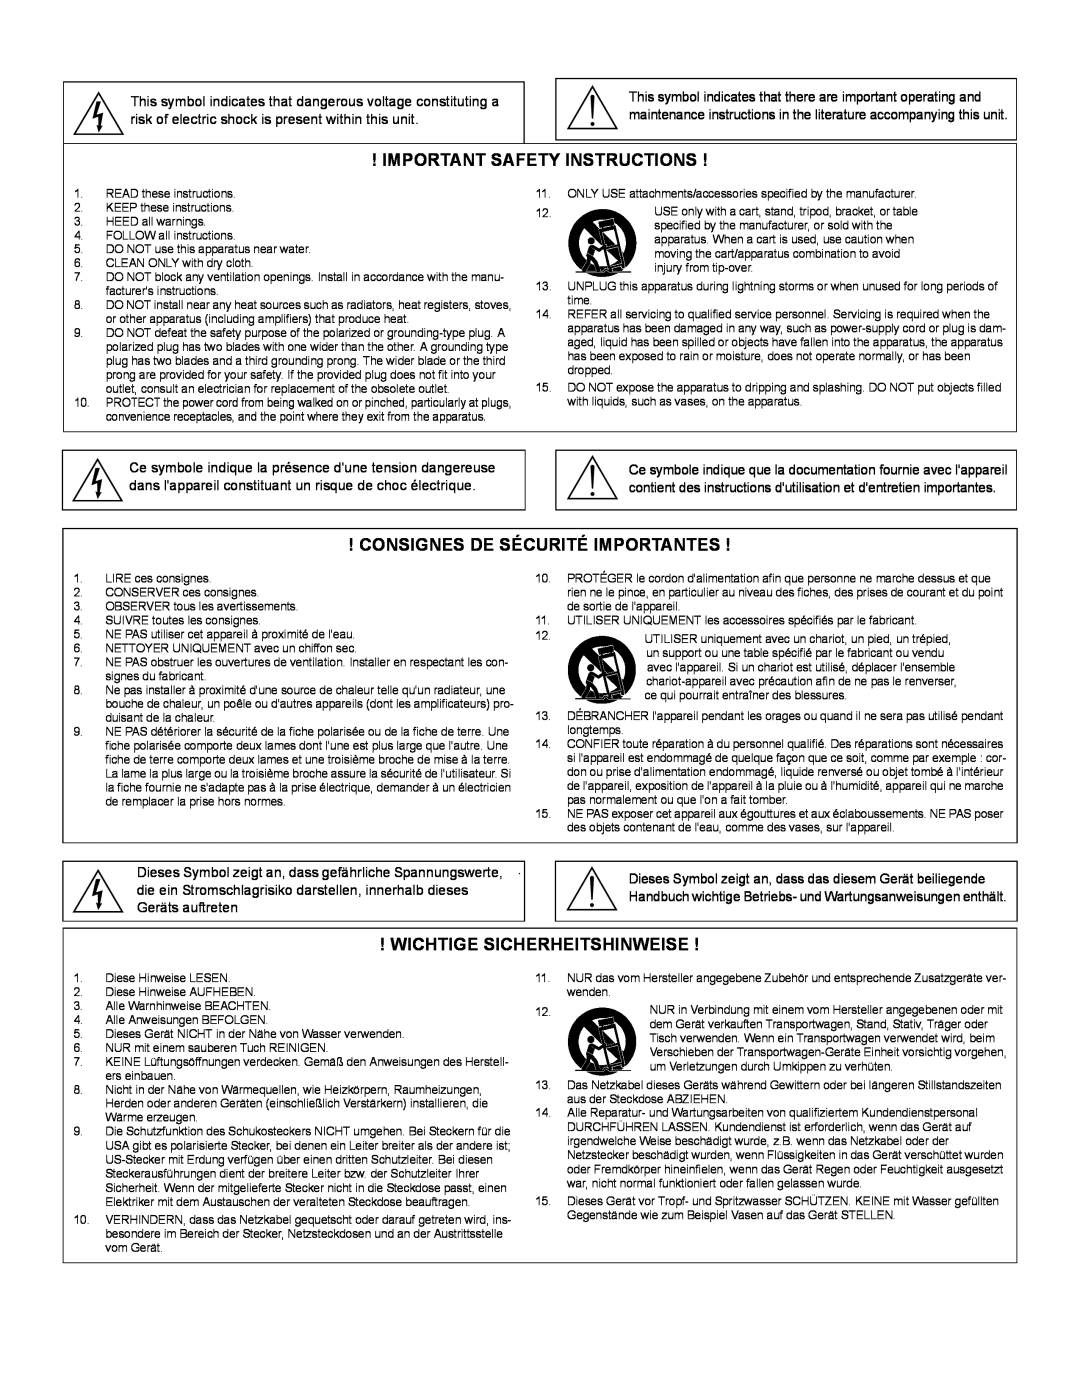 Shure SCM262 manual Important Safety Instructions, Consignes De Sécurité Importantes, Wichtige Sicherheitshinweise 